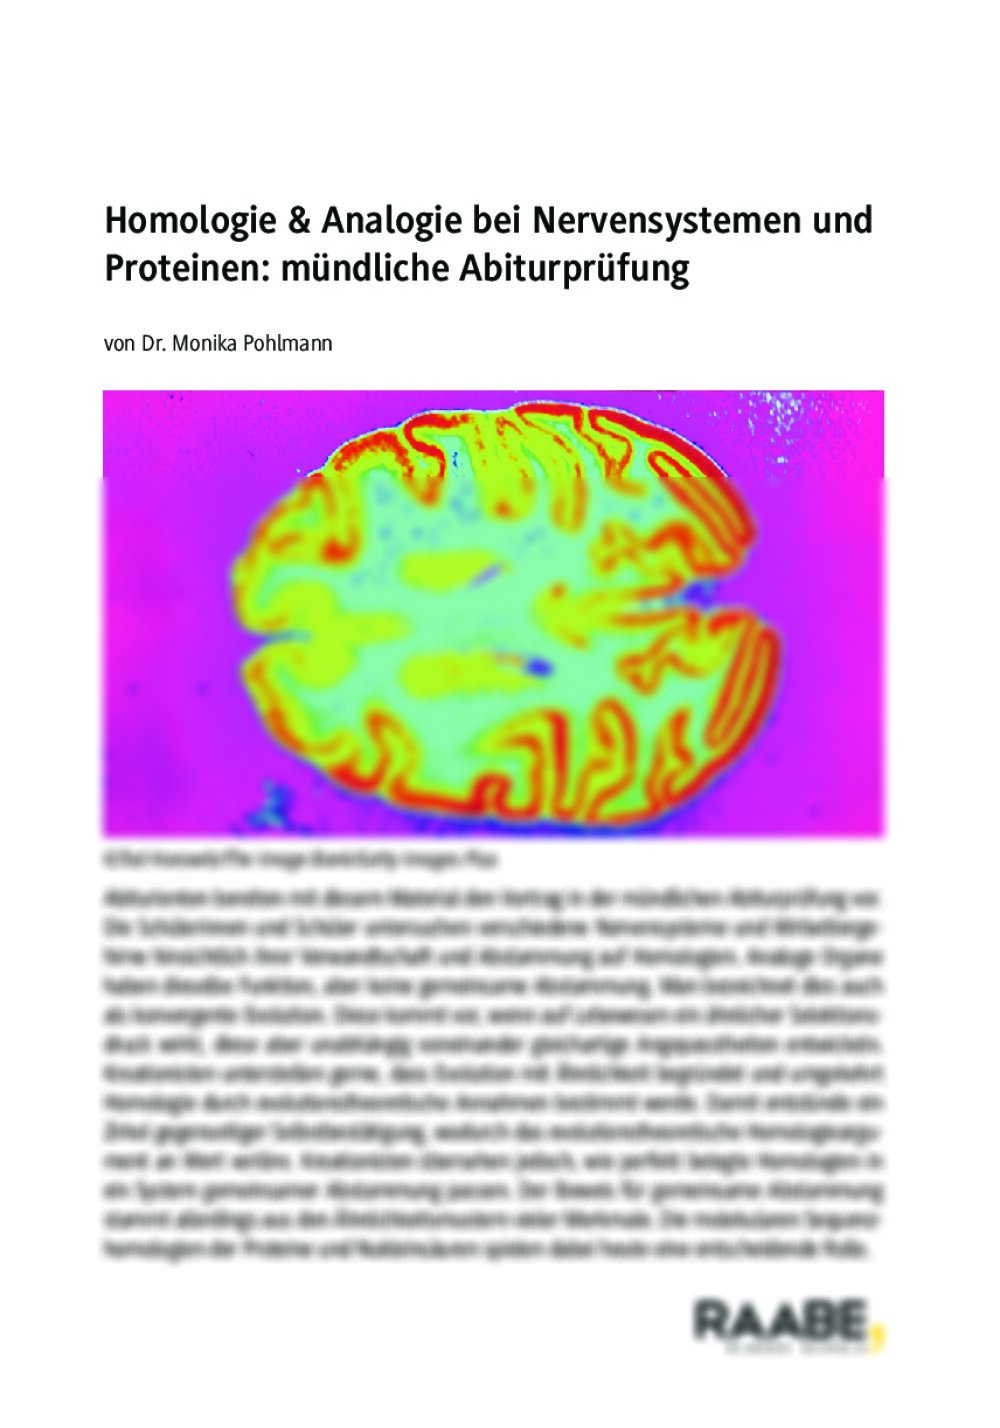 Homologie & Analogie bei Nervensystemen und Proteinen: mündliches Abitur - Seite 1